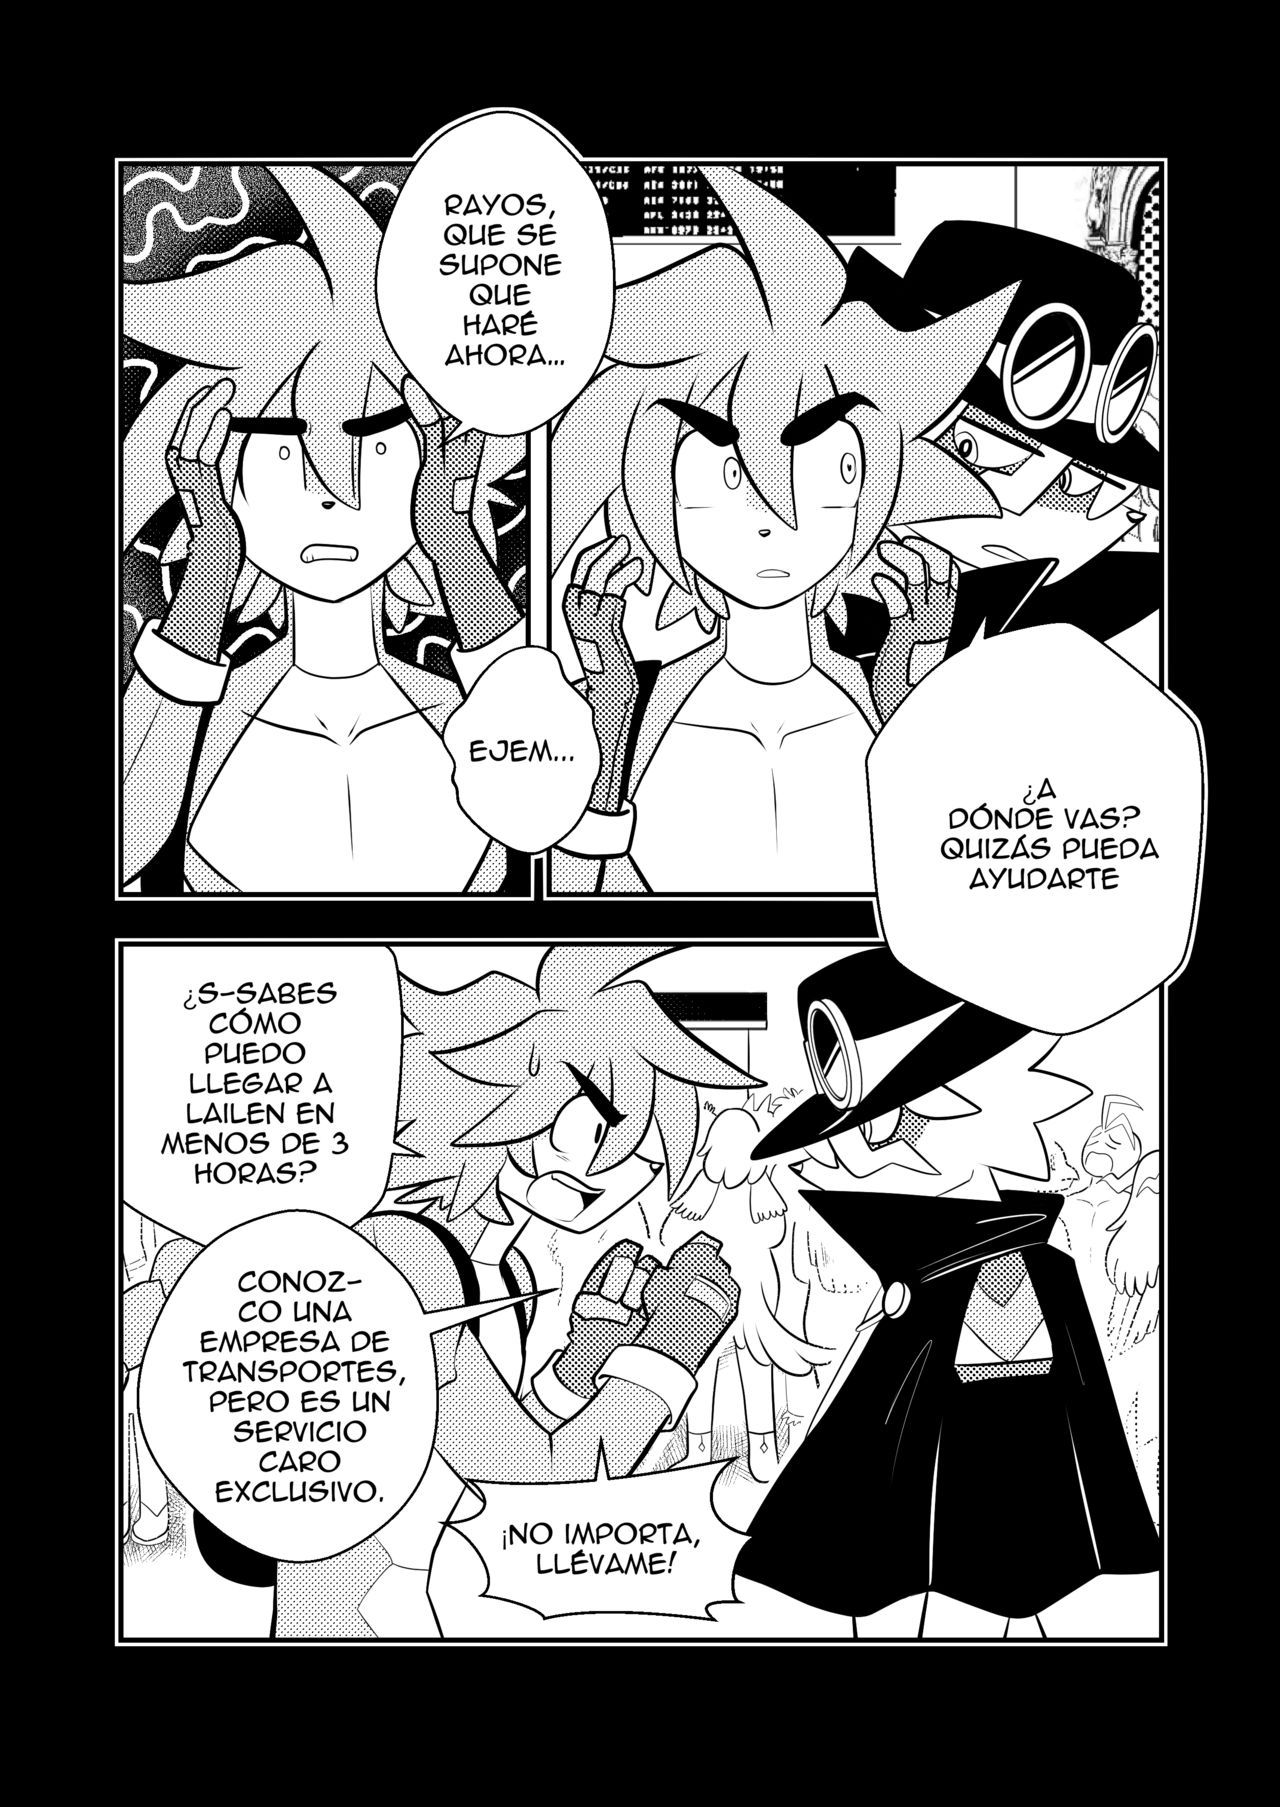 Spaicy comic (Spanish) 152